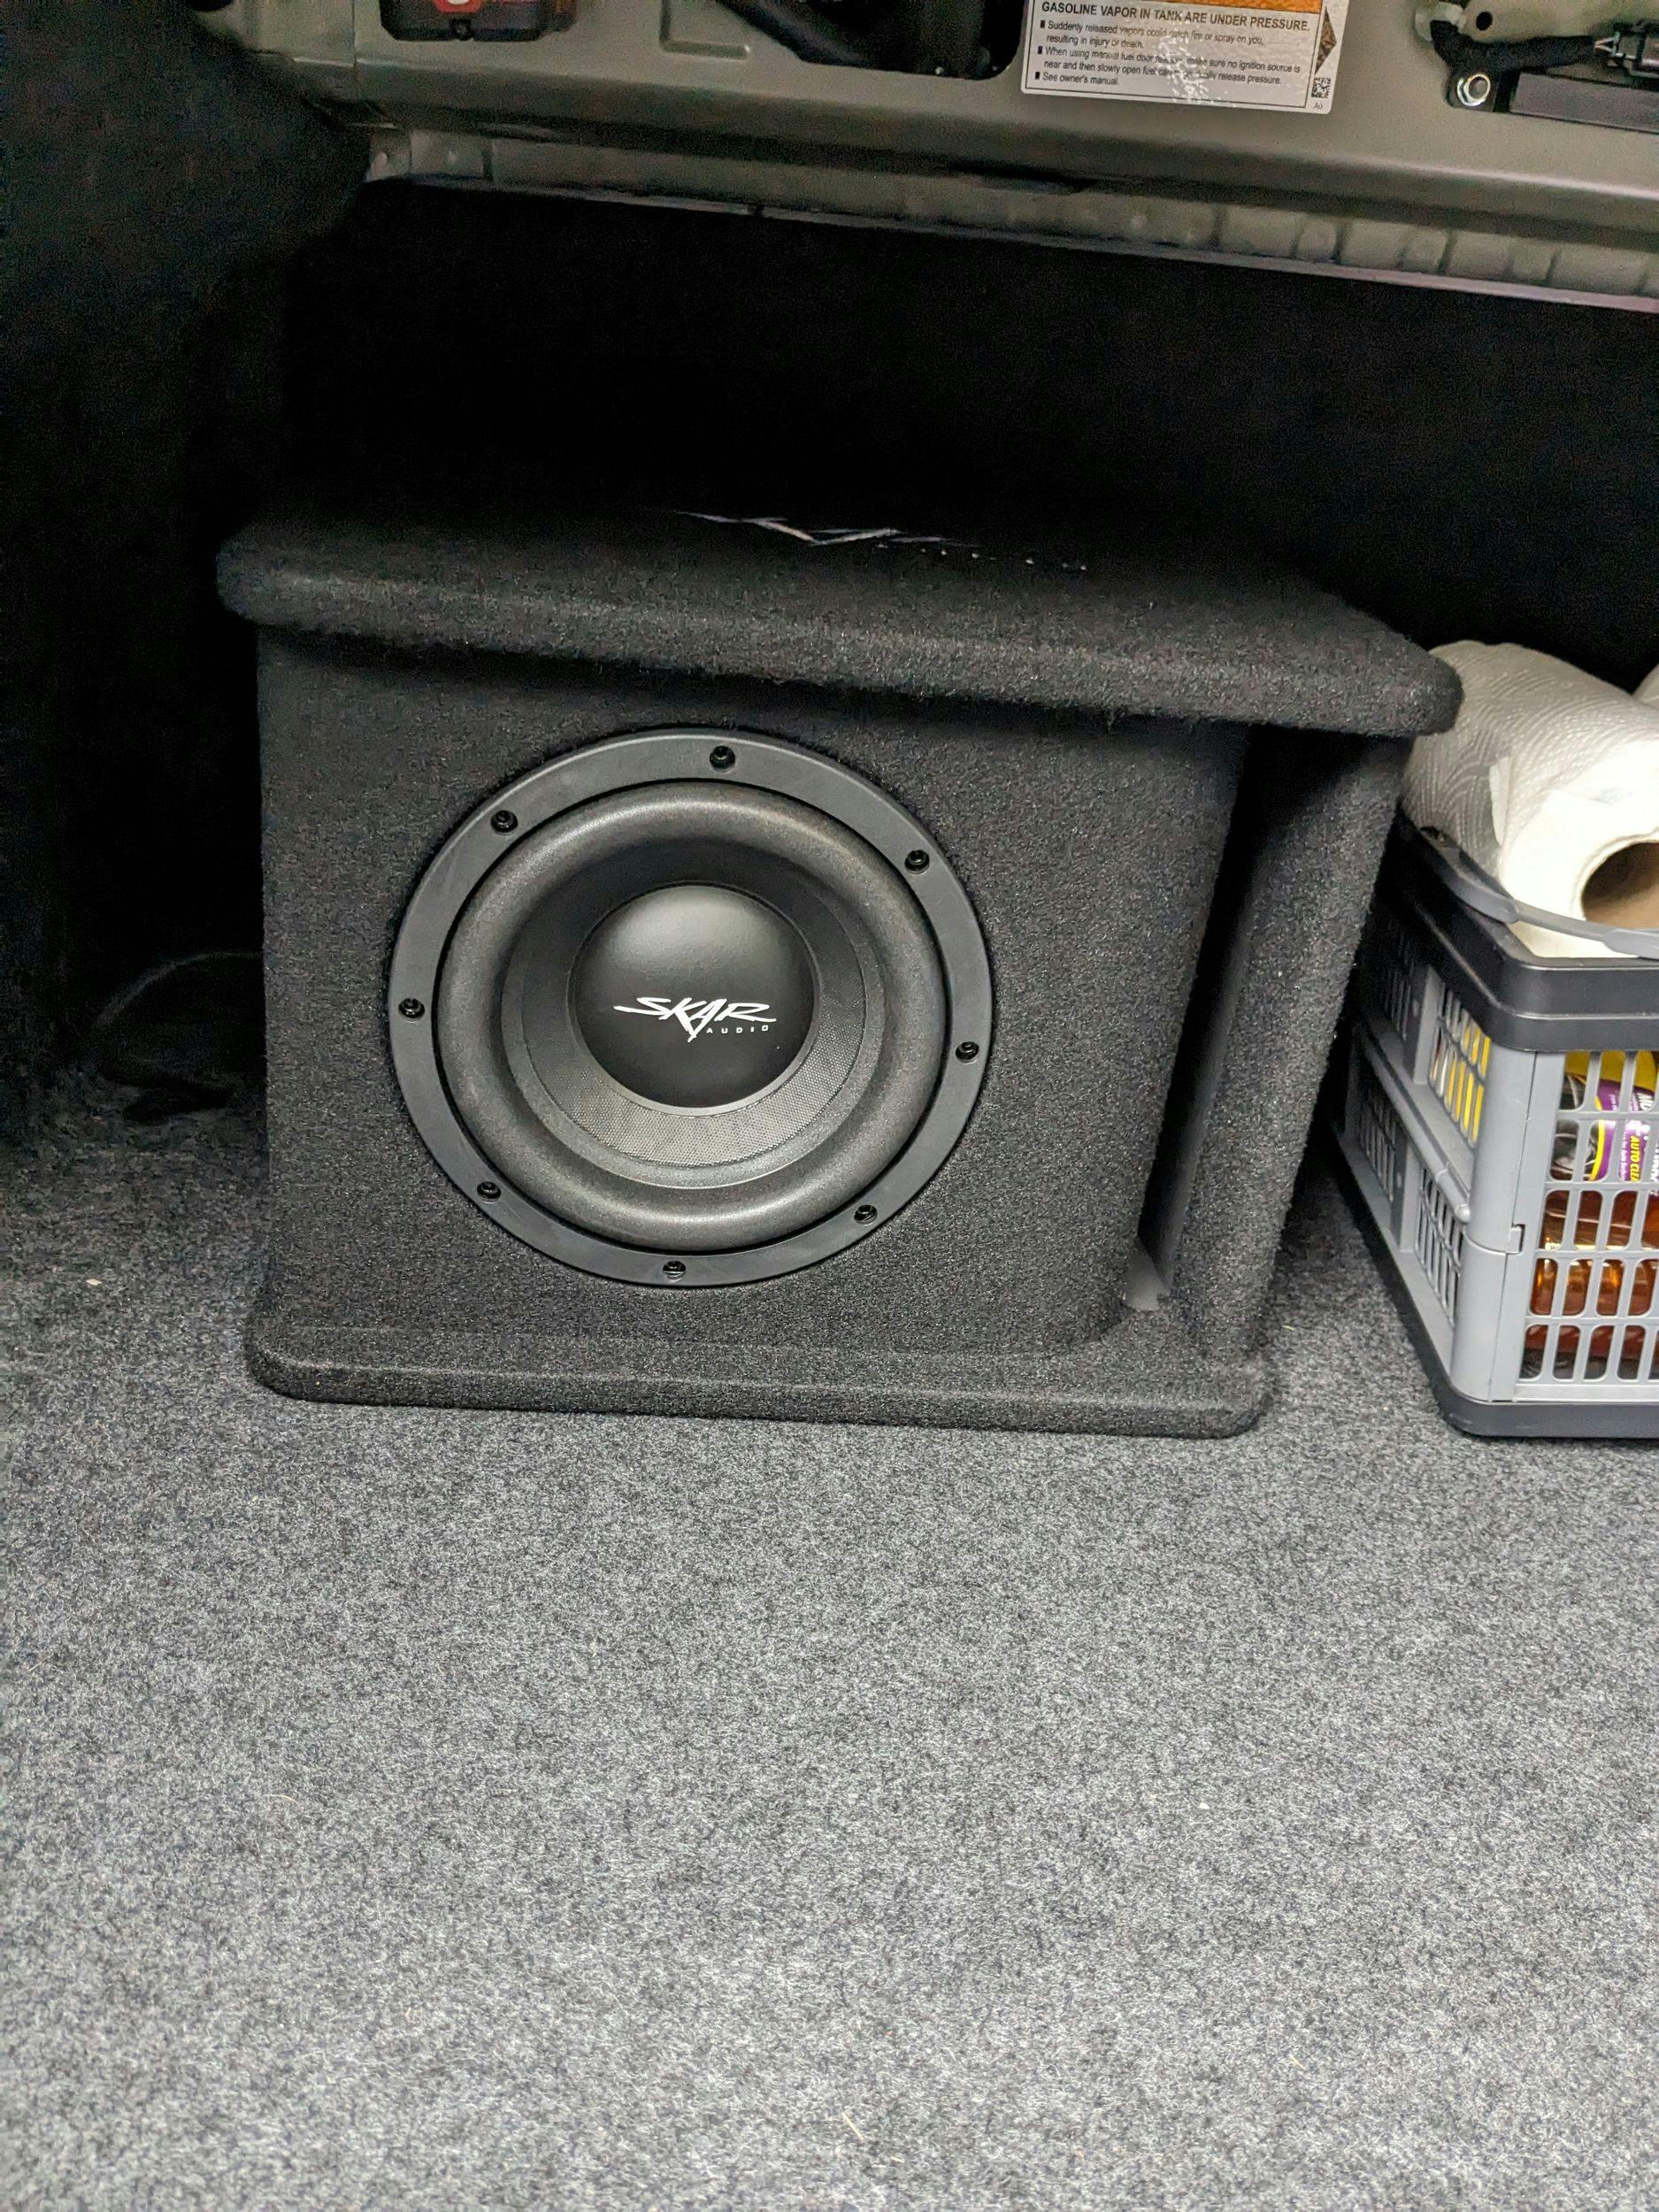 Convertisseur audio Bose System pour Audi - Skar Audio